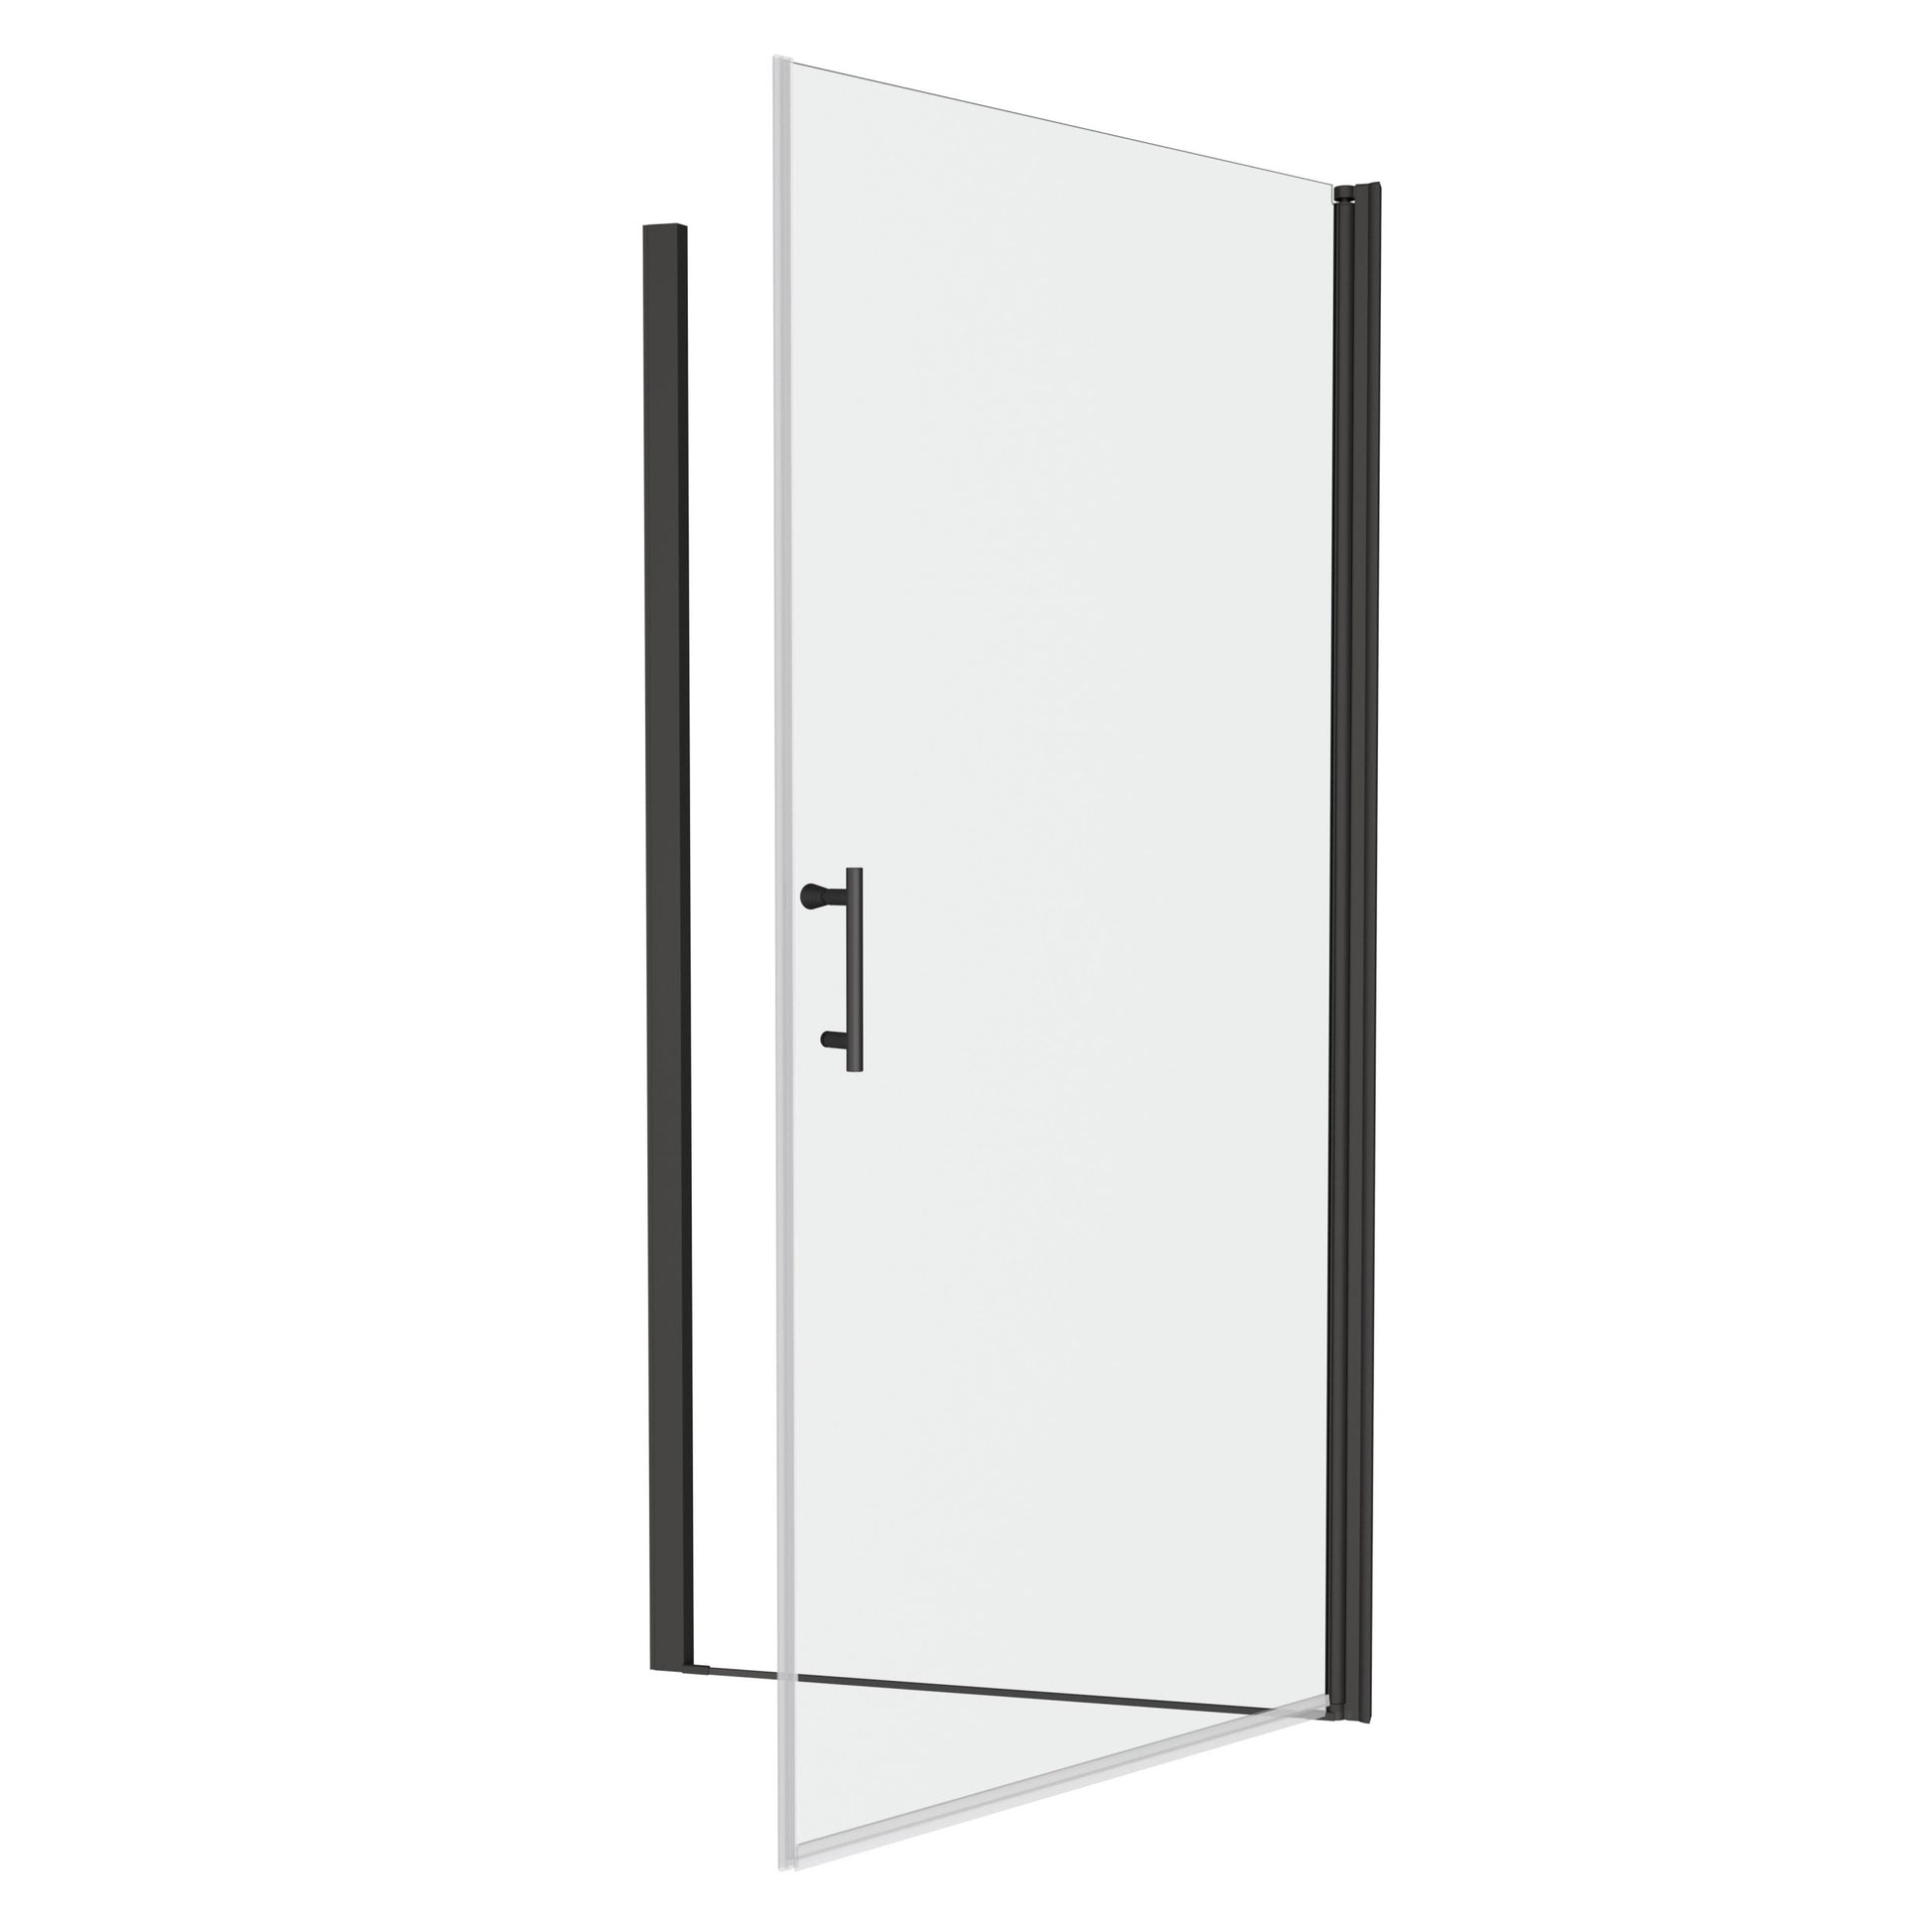 1 3 8" Adjustment,Universal Pivot Shower Door,